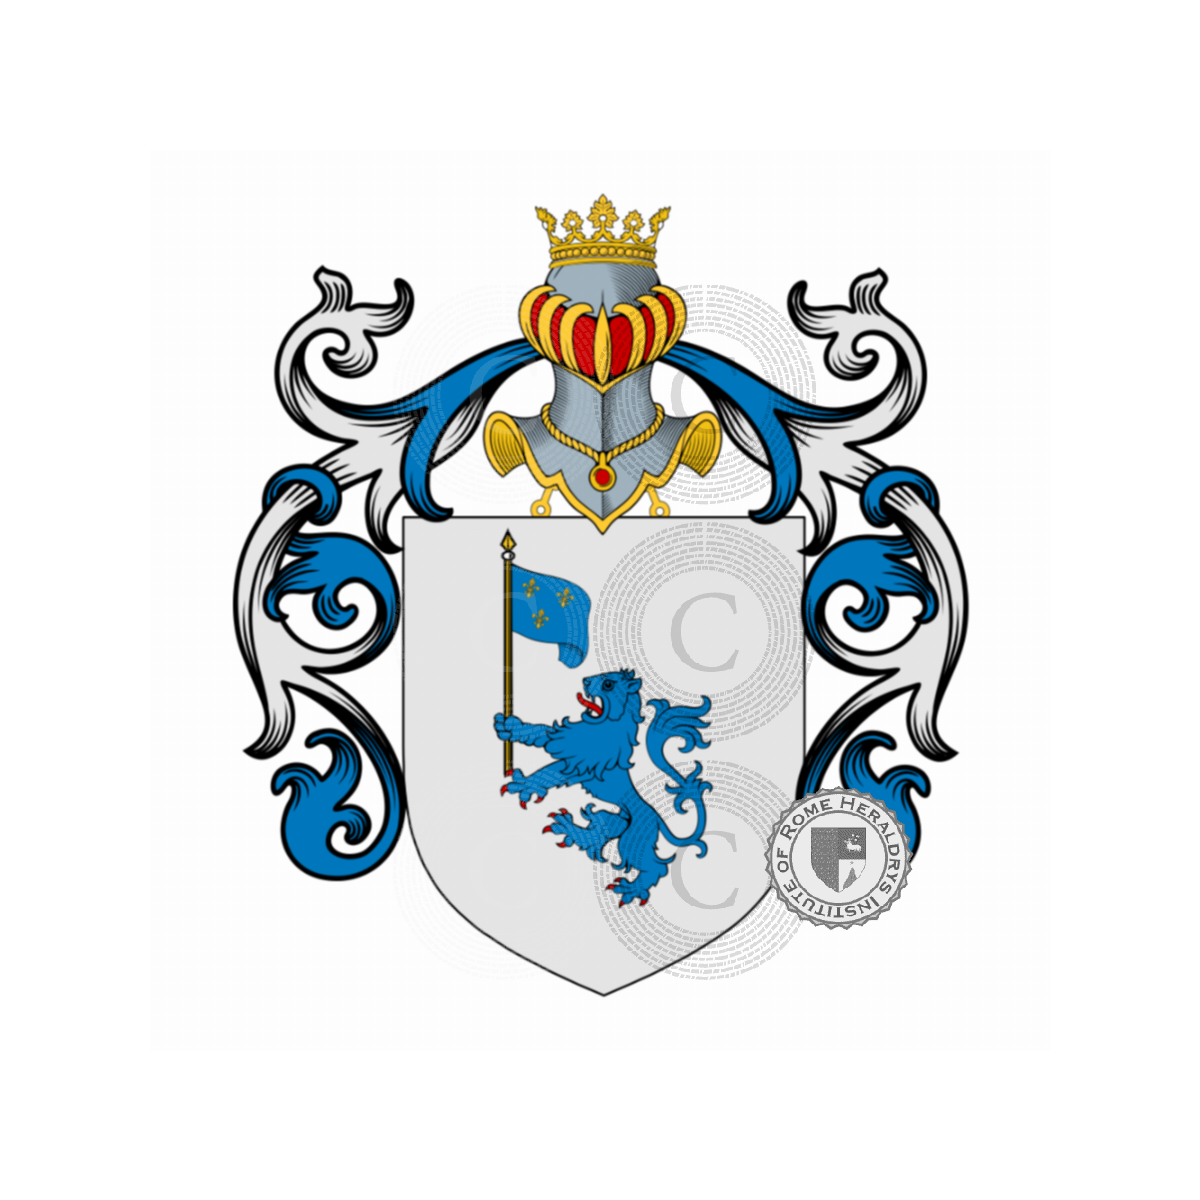 Escudo de la familiaAcciaioli, Acciaioli,Acciaresi,Acciarini